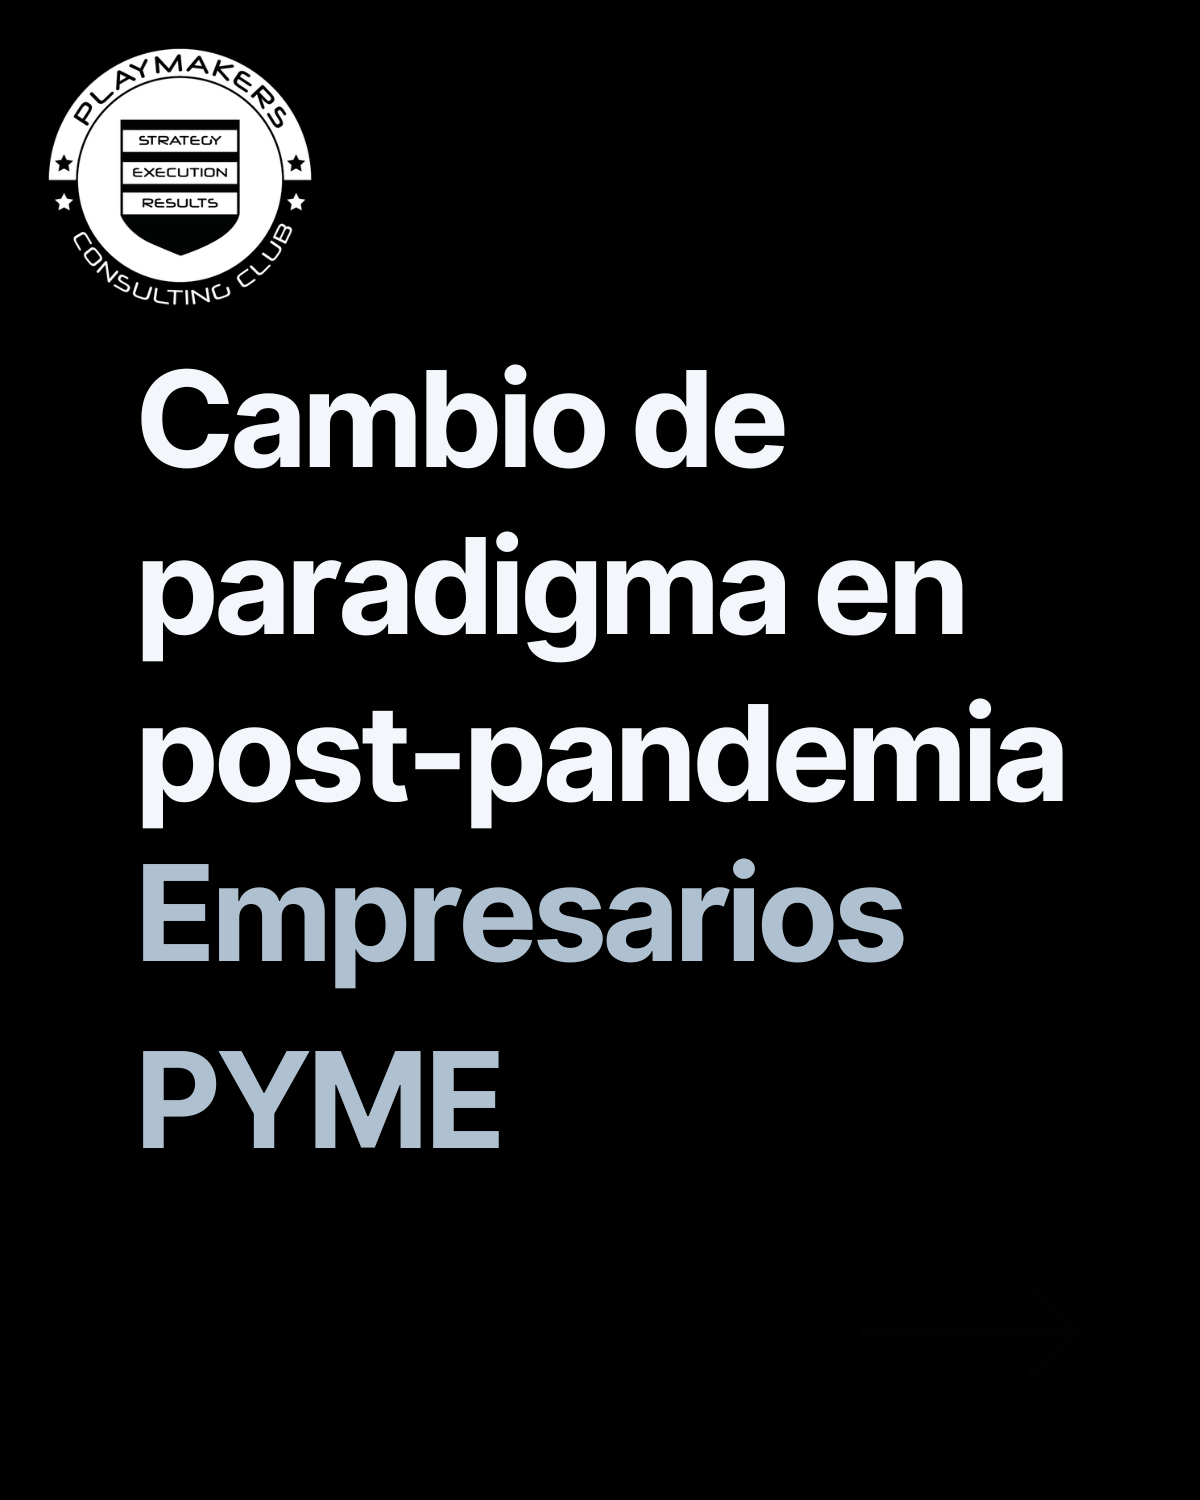 El cambio de paradigma post-pandemia para empresarios pyme en España